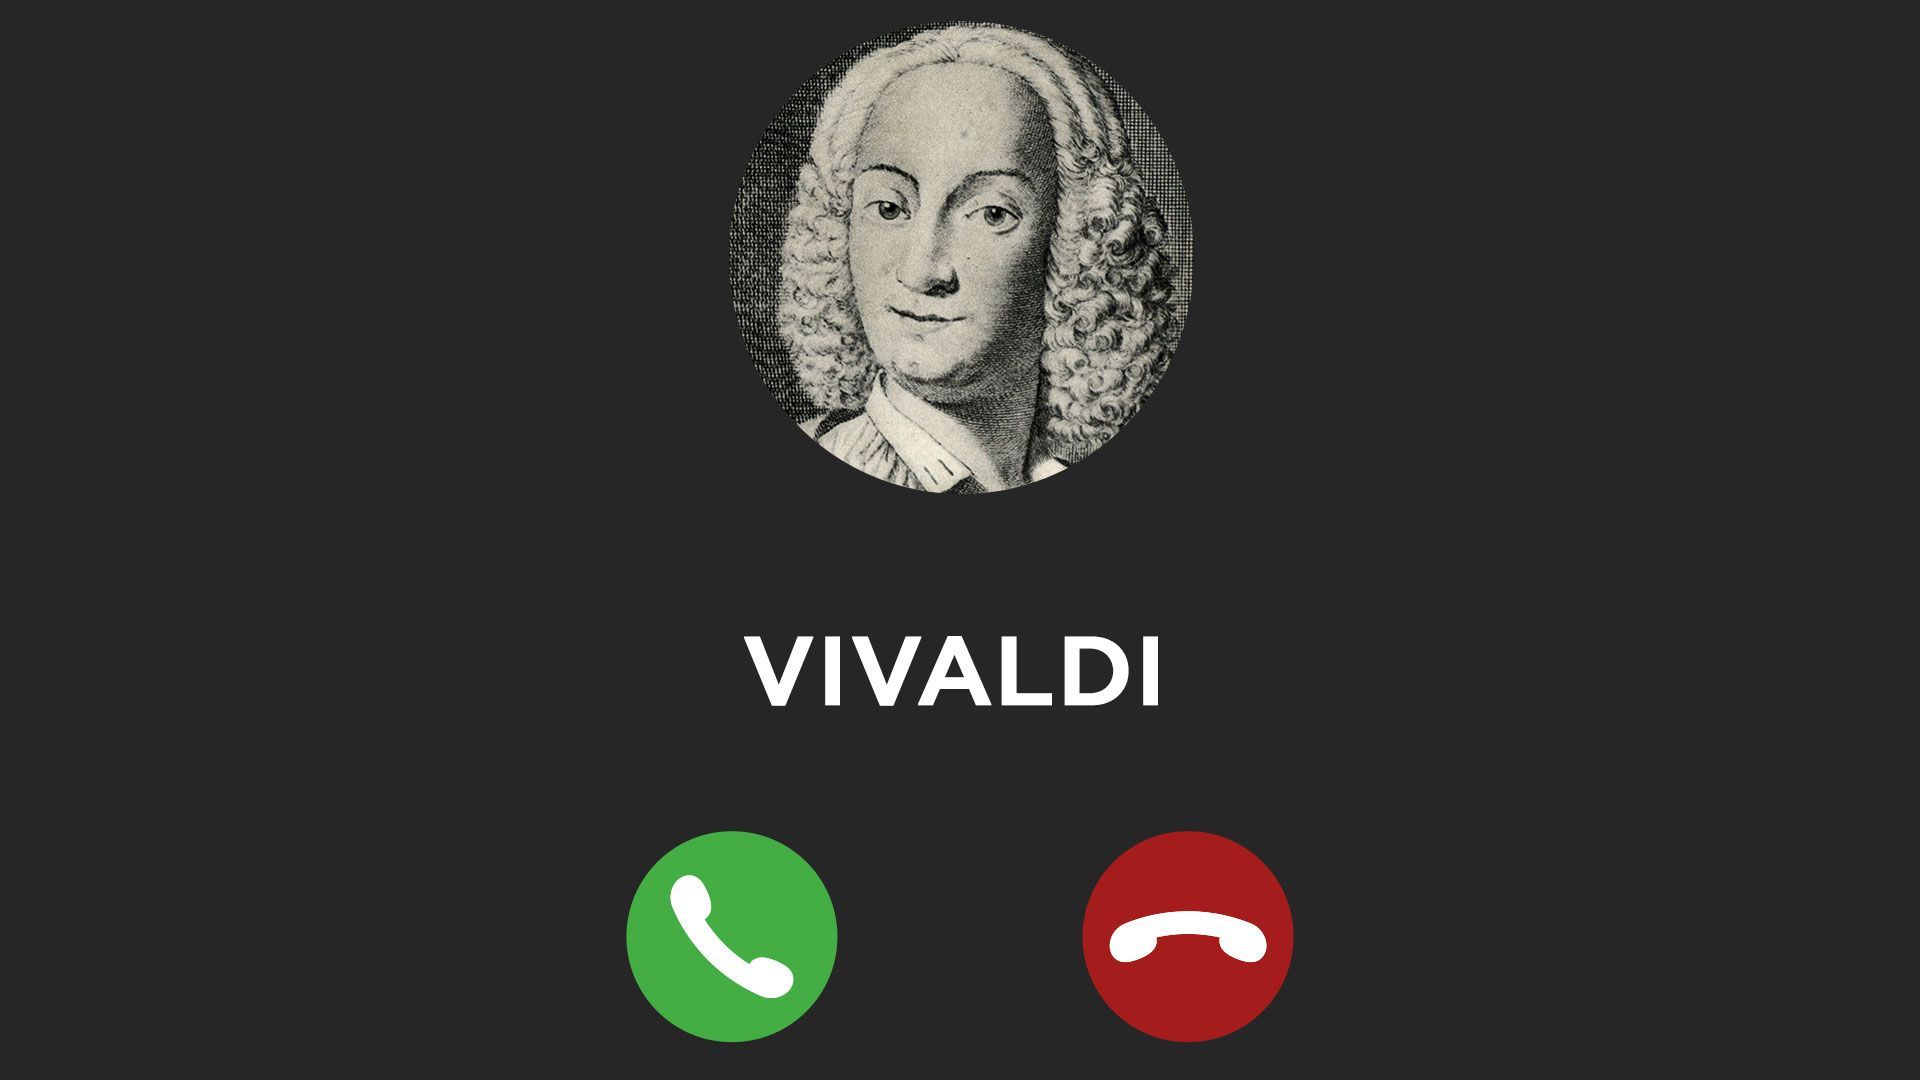 Les quatre saisons de Vivaldi bannis des répondeurs du département du travail et des pensions britannique